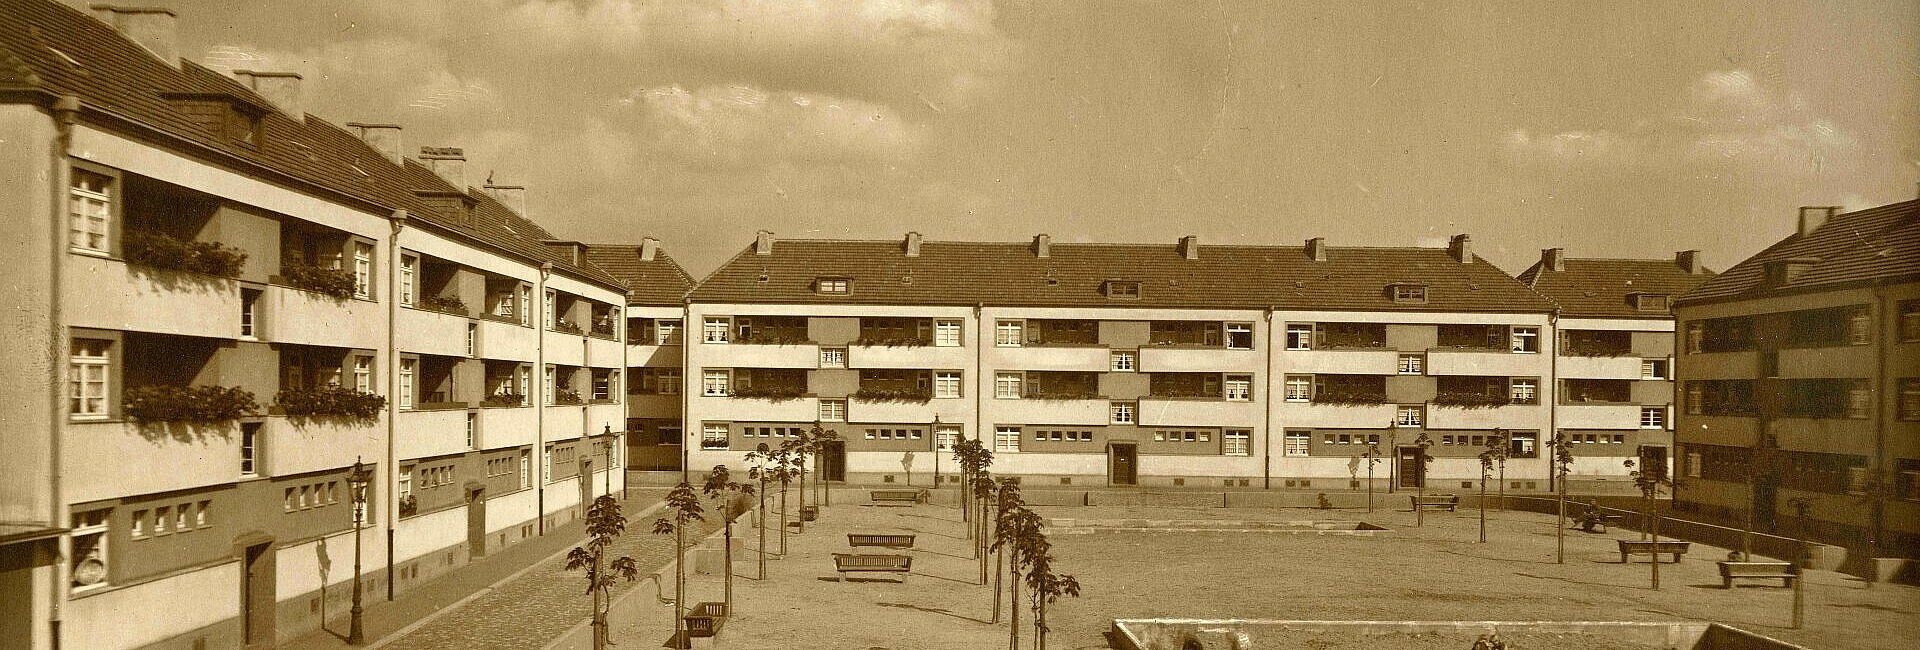 Historisches Foto der Rosenhofsiedlung in Bickendorf mit zentralem Platz